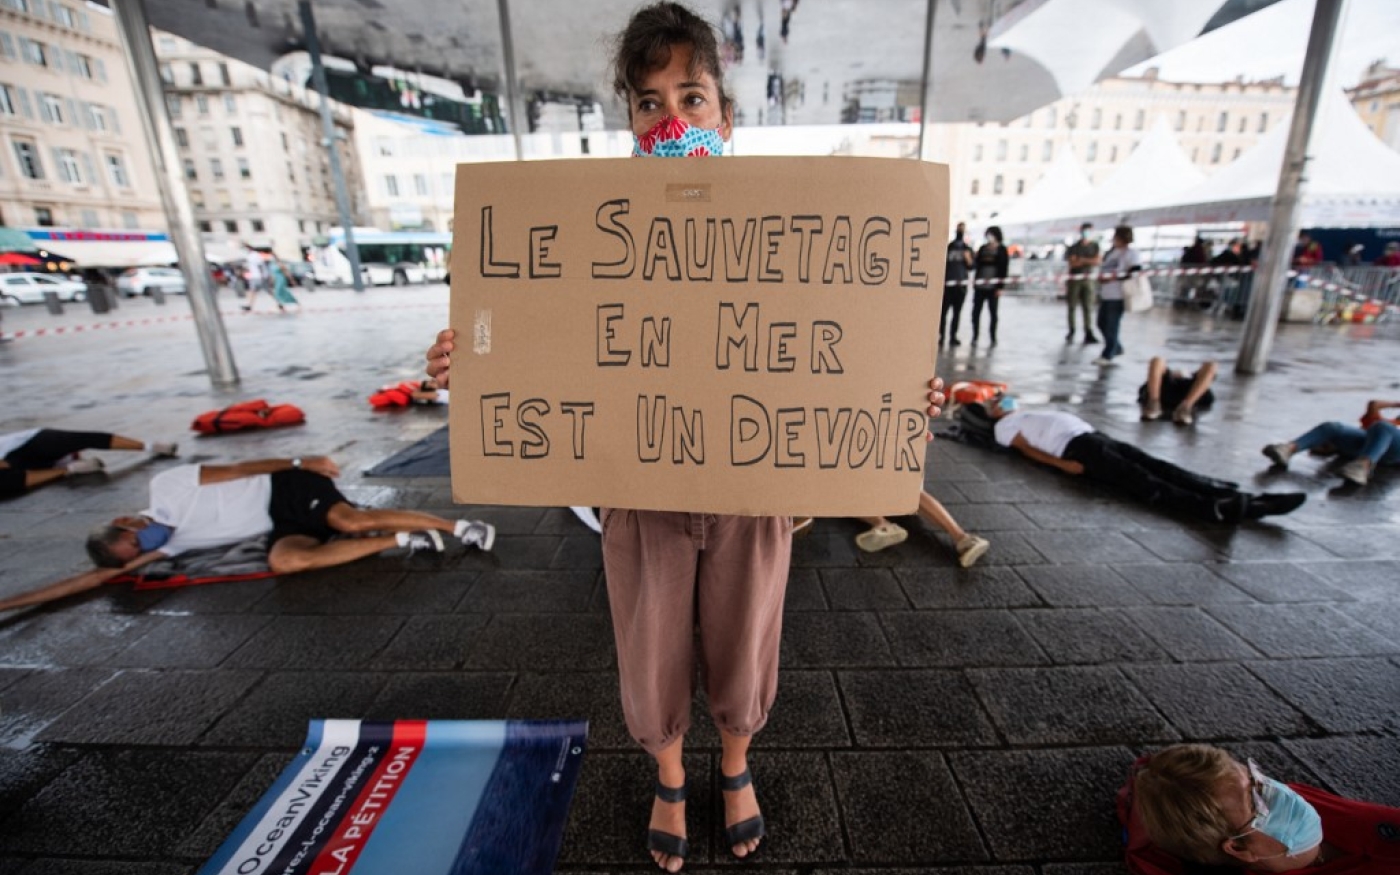 Une militante de l’ONG SOS Méditerranée tient une pancarte indiquant « Le sauvetage en mer est un devoir » sur le Vieux-Port de Marseille, le 29 août 2020, lors d’une manifestation pour exiger la libération par les autorités italiennes du navire Ocean Viking (AFP/Clément Mahoudeau)